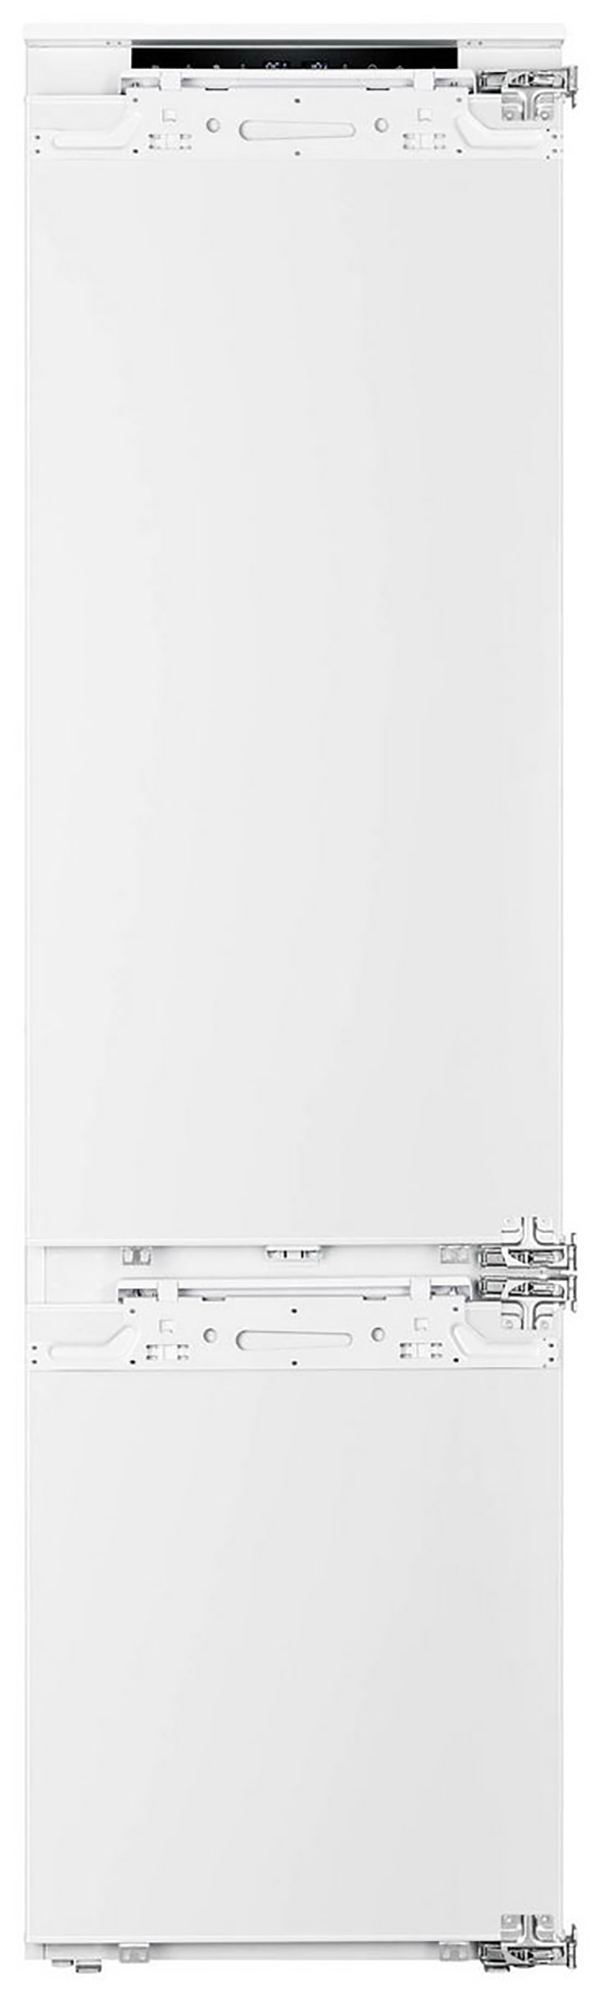 Встраиваемый холодильник Korting KSI 19547 CFNFZ белый встраиваемый двухкамерный холодильник korting ksi 19699 cfnfz